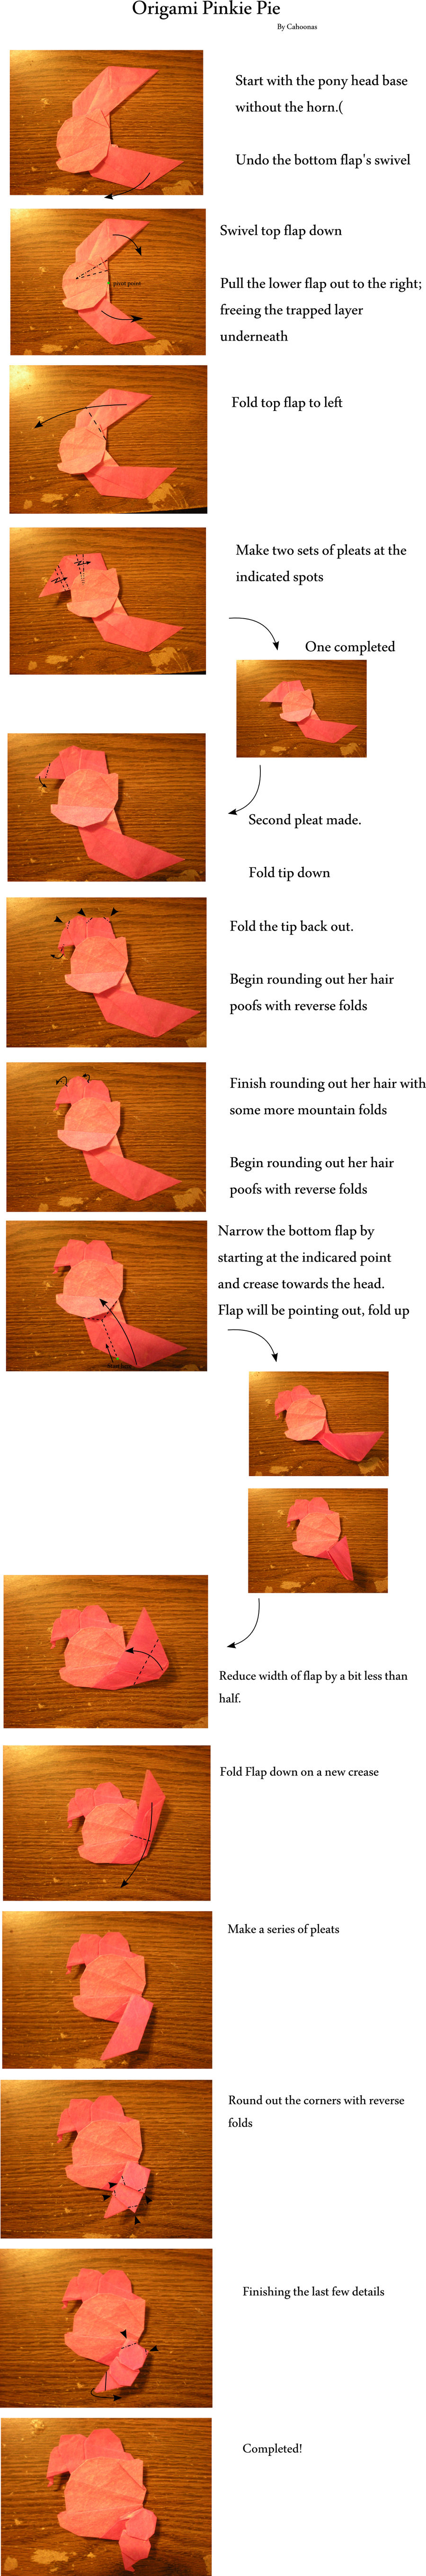 Origami Pinkie Pie Head